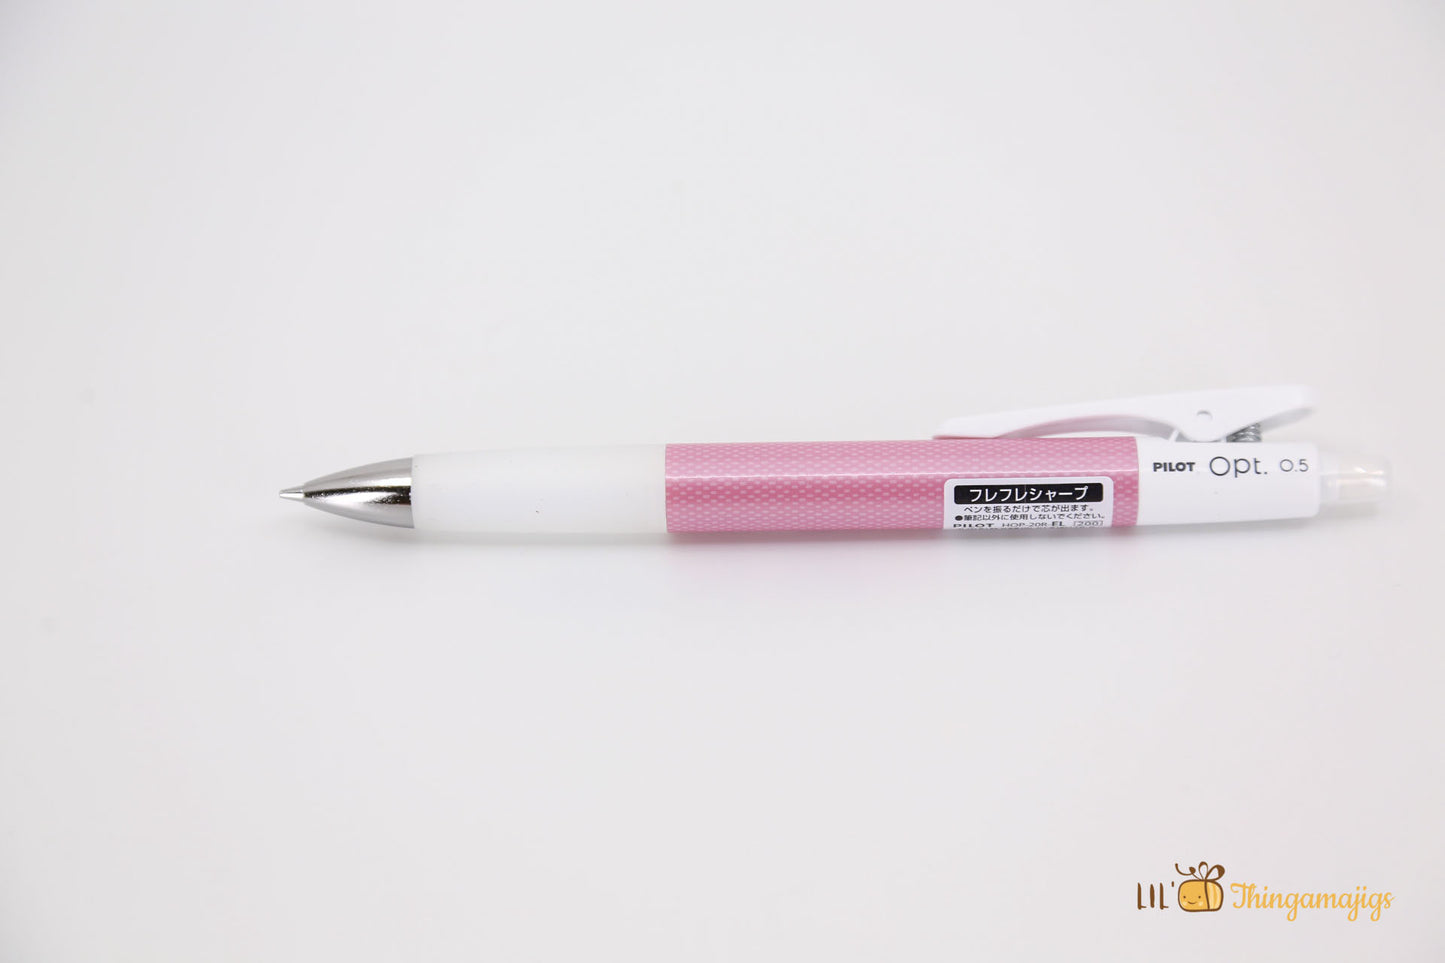 Pilot Opt Shaker Mechanical Pencil - 0.5mm